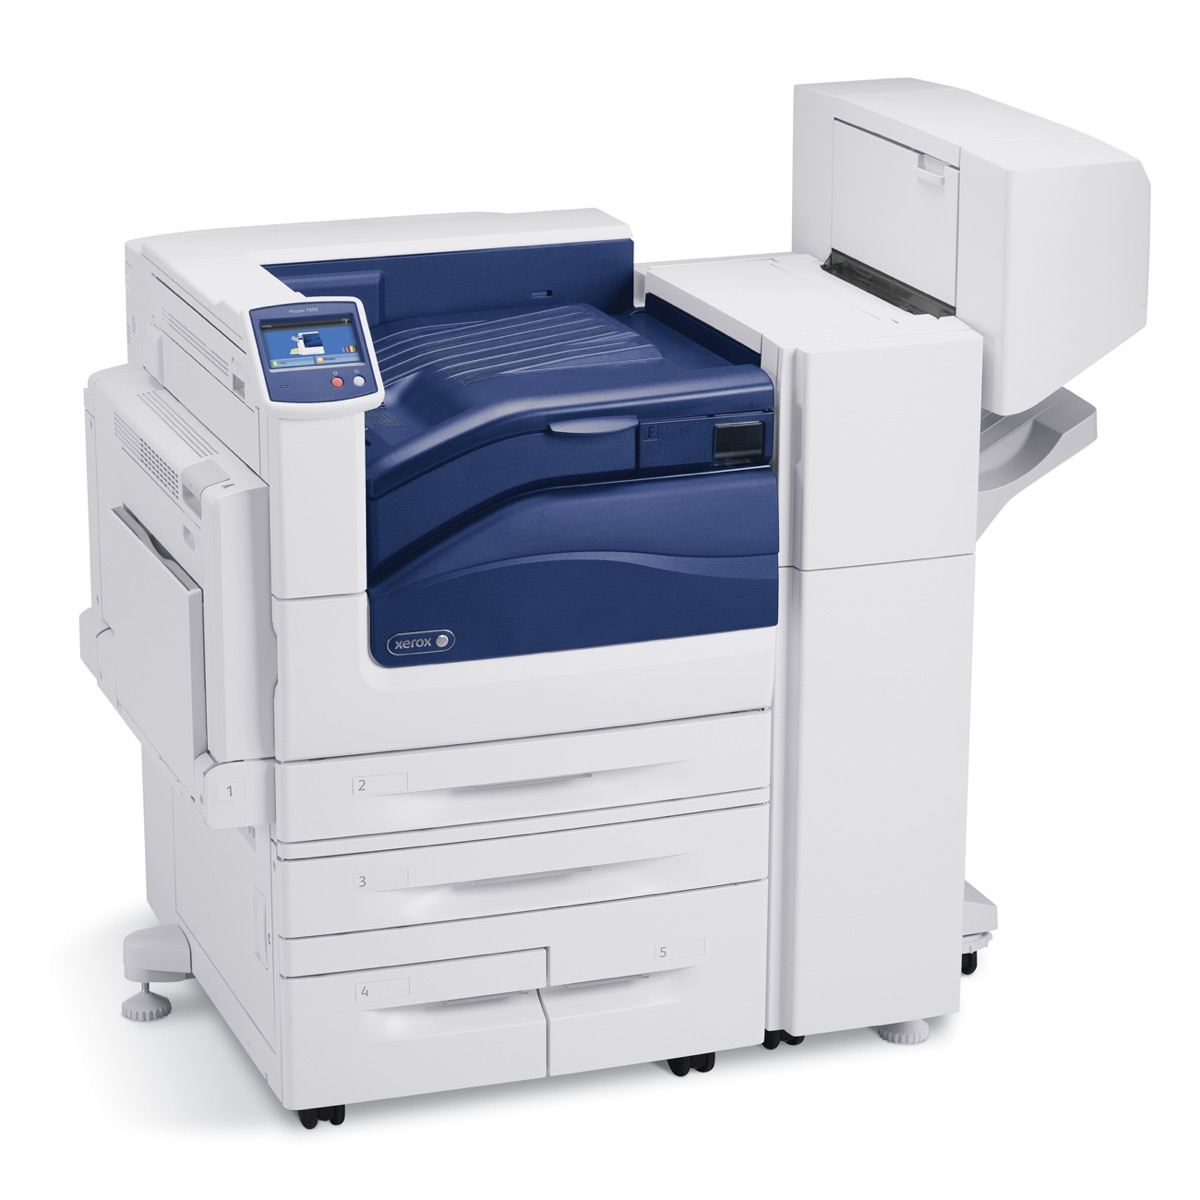 Xerox Printers:  The Xerox Phaser 7800DX Printer